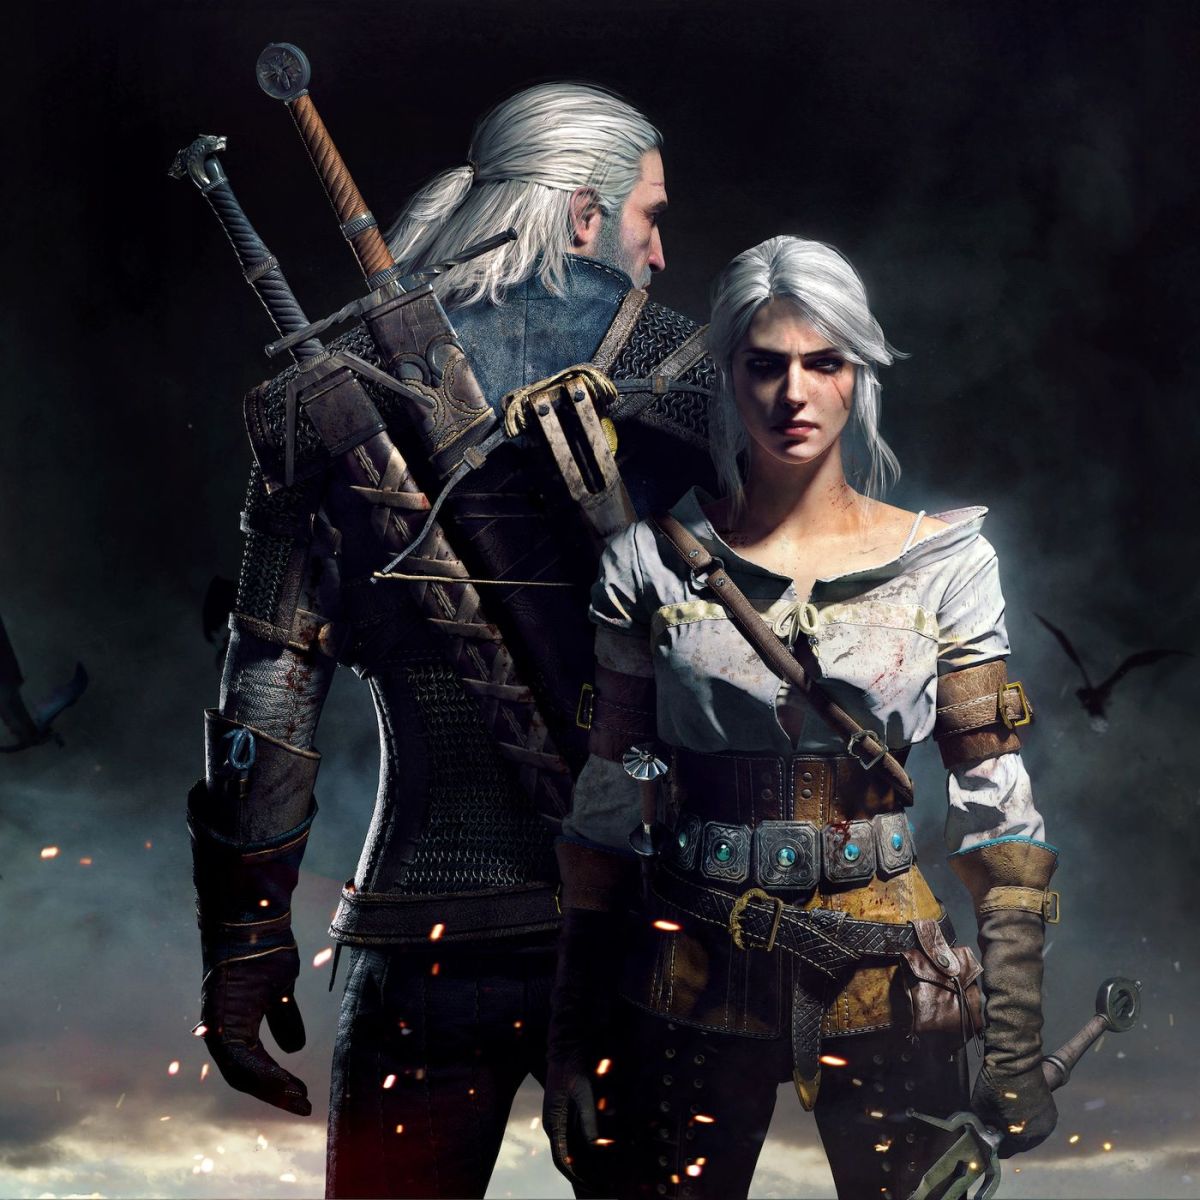 Nhân vật Geralt sẽ phải đi qua nhiều vùng đất, đối mặt với nhiều sự lựa chọn, gặp gỡ nhiều người khác nhau.